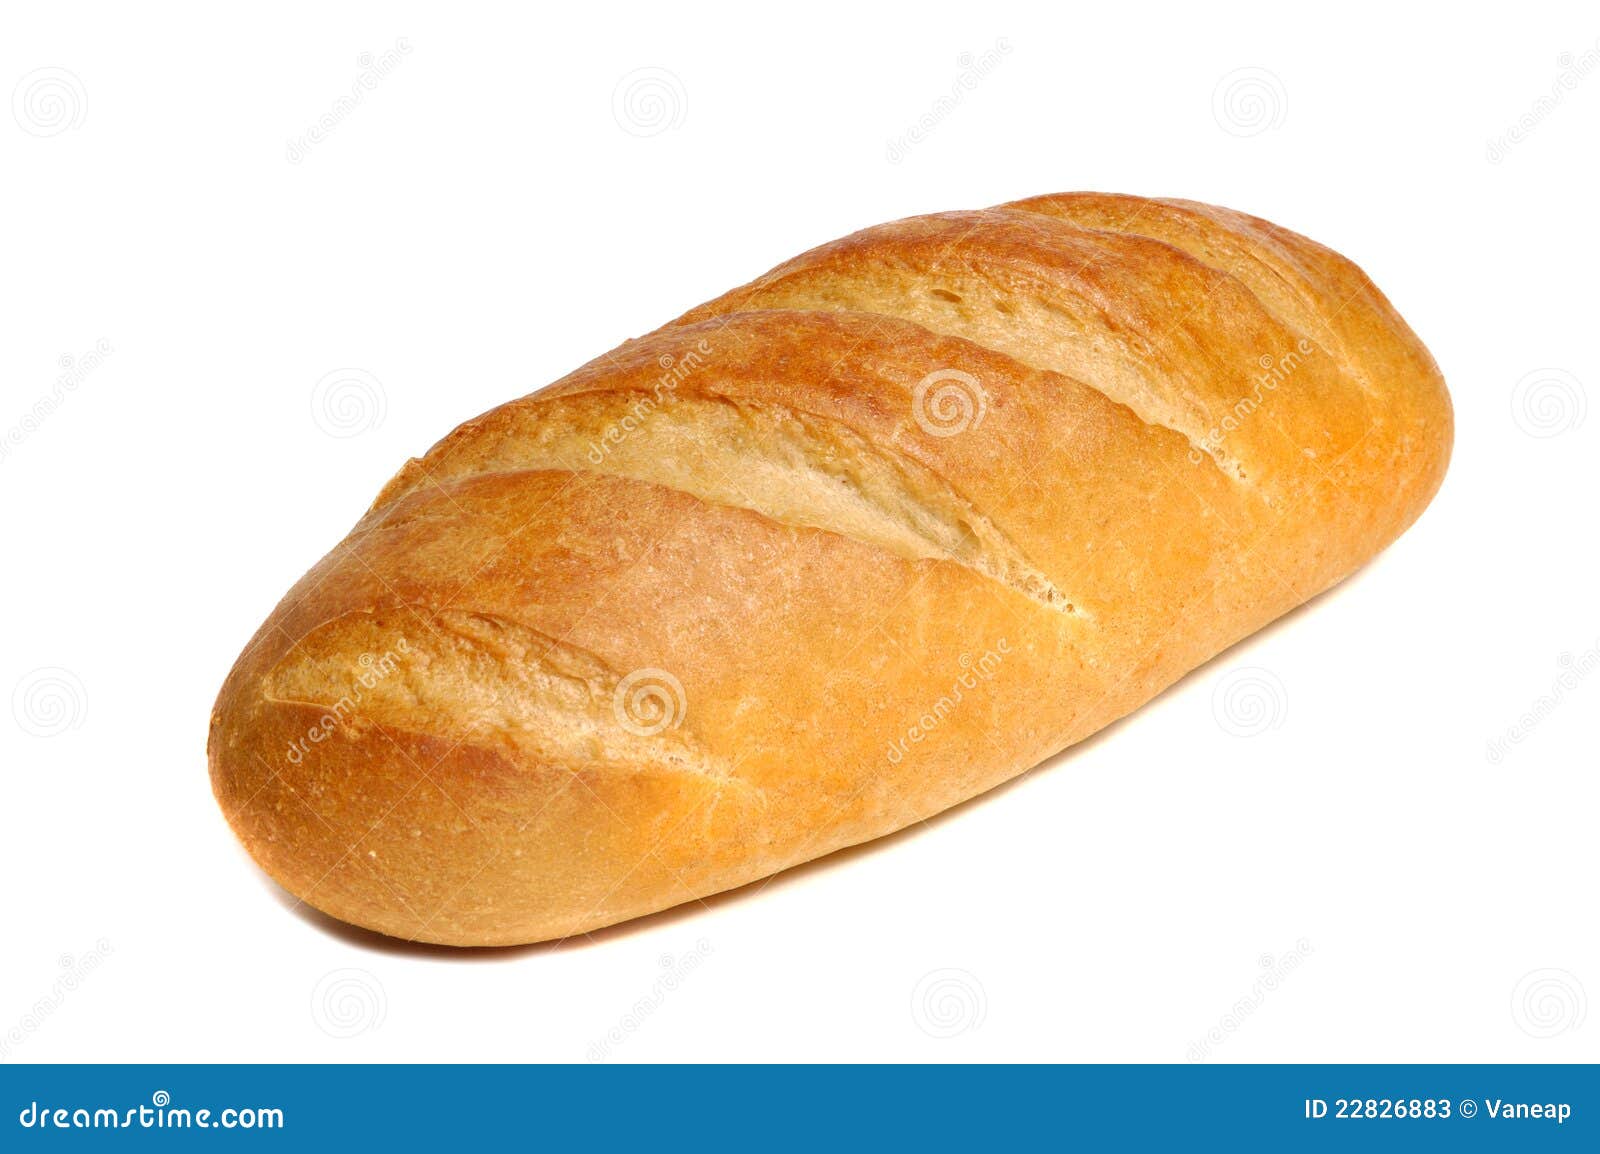 long loaf bread